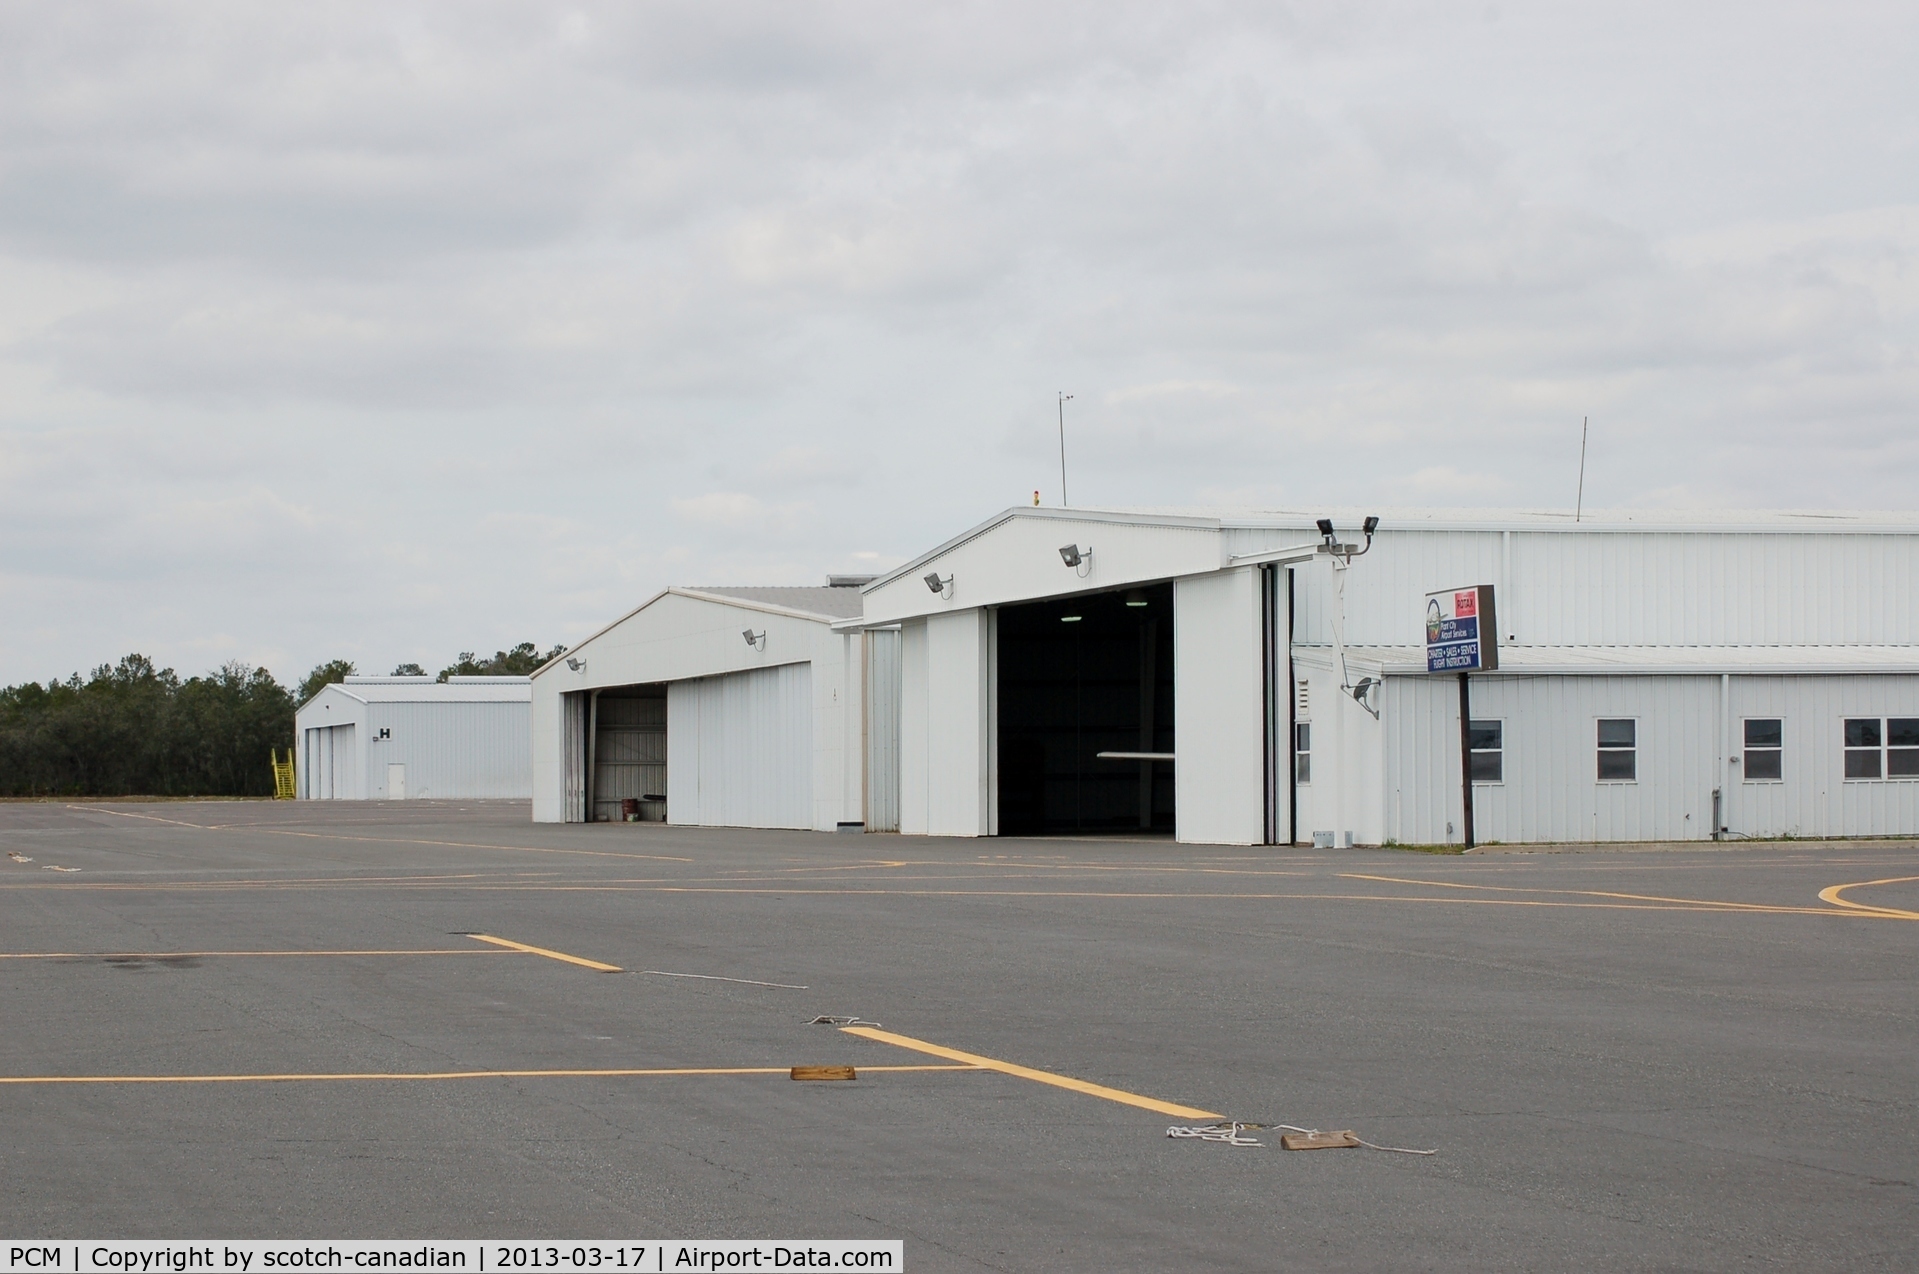 Plant City Airport (PCM) - Plant City Airport Services Hangars at Plant City Airport, Plant City, FL